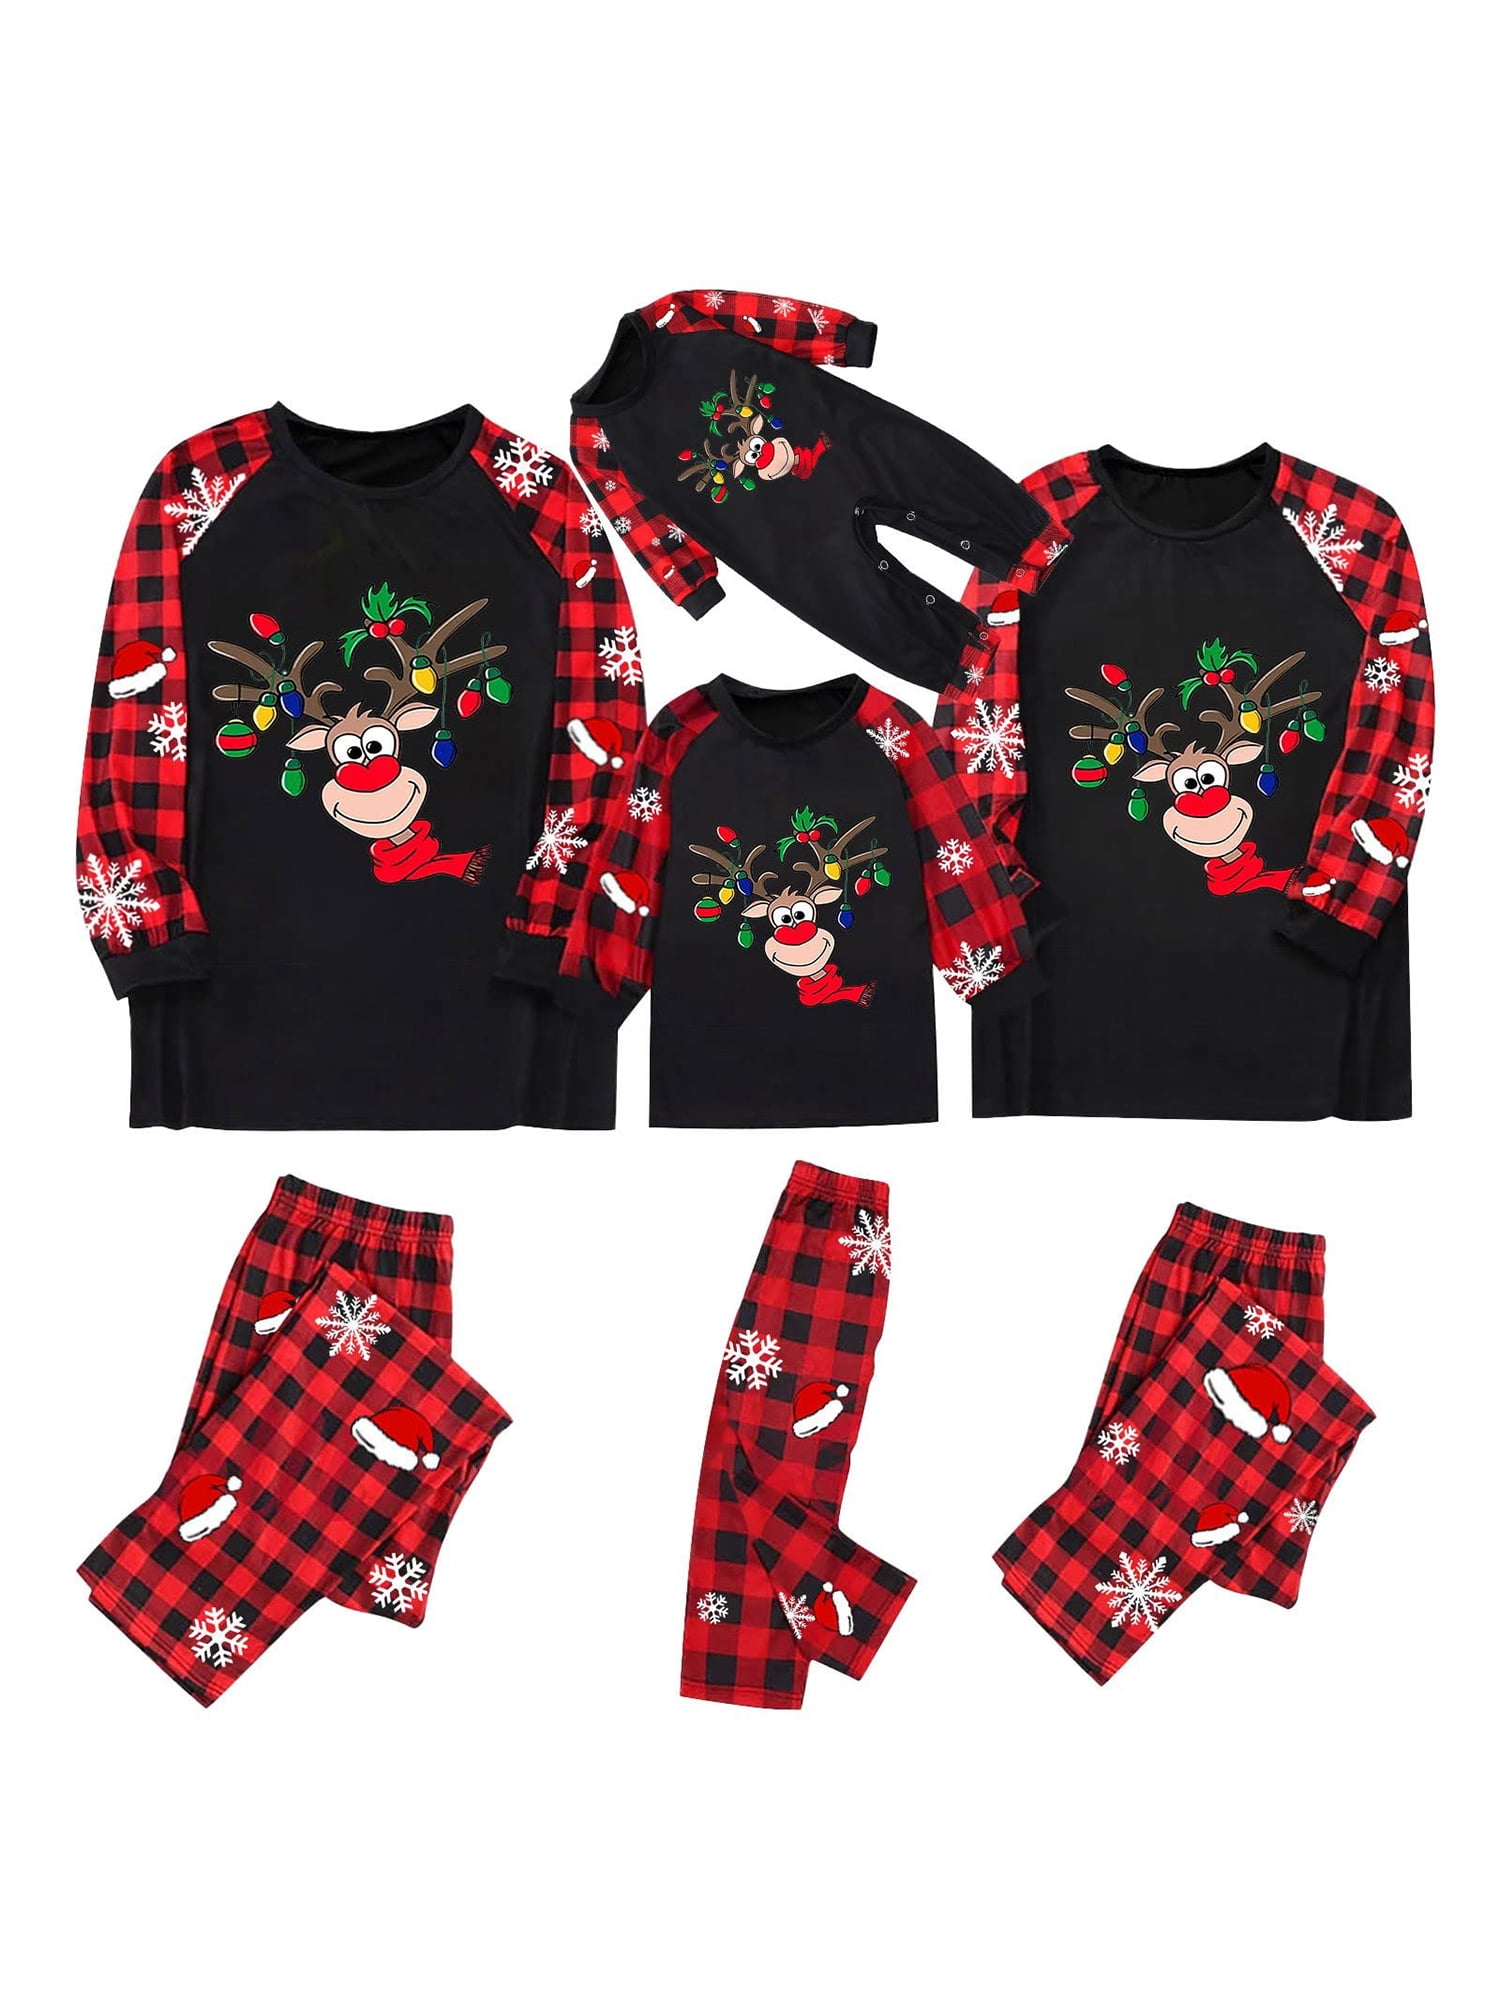 Ma&Baby Christmas Family Matching Pajamas Set,Xmas Nightwear Sleepsuit ...